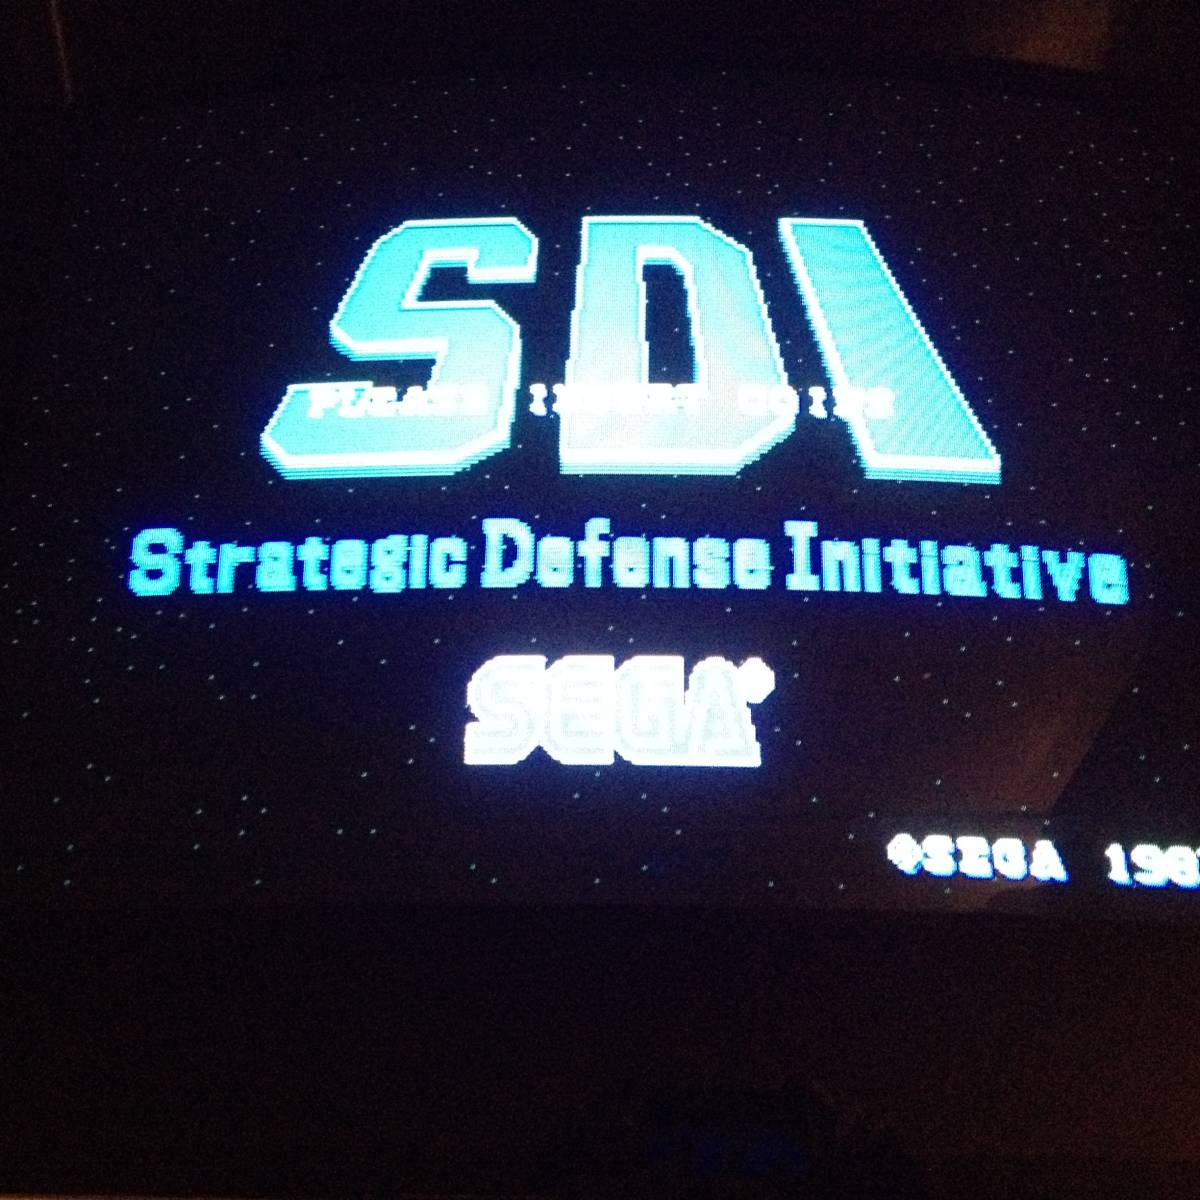 ゲーム基板 SEGA S D I (Strategic Defense Initiative) SYSTEM 16B